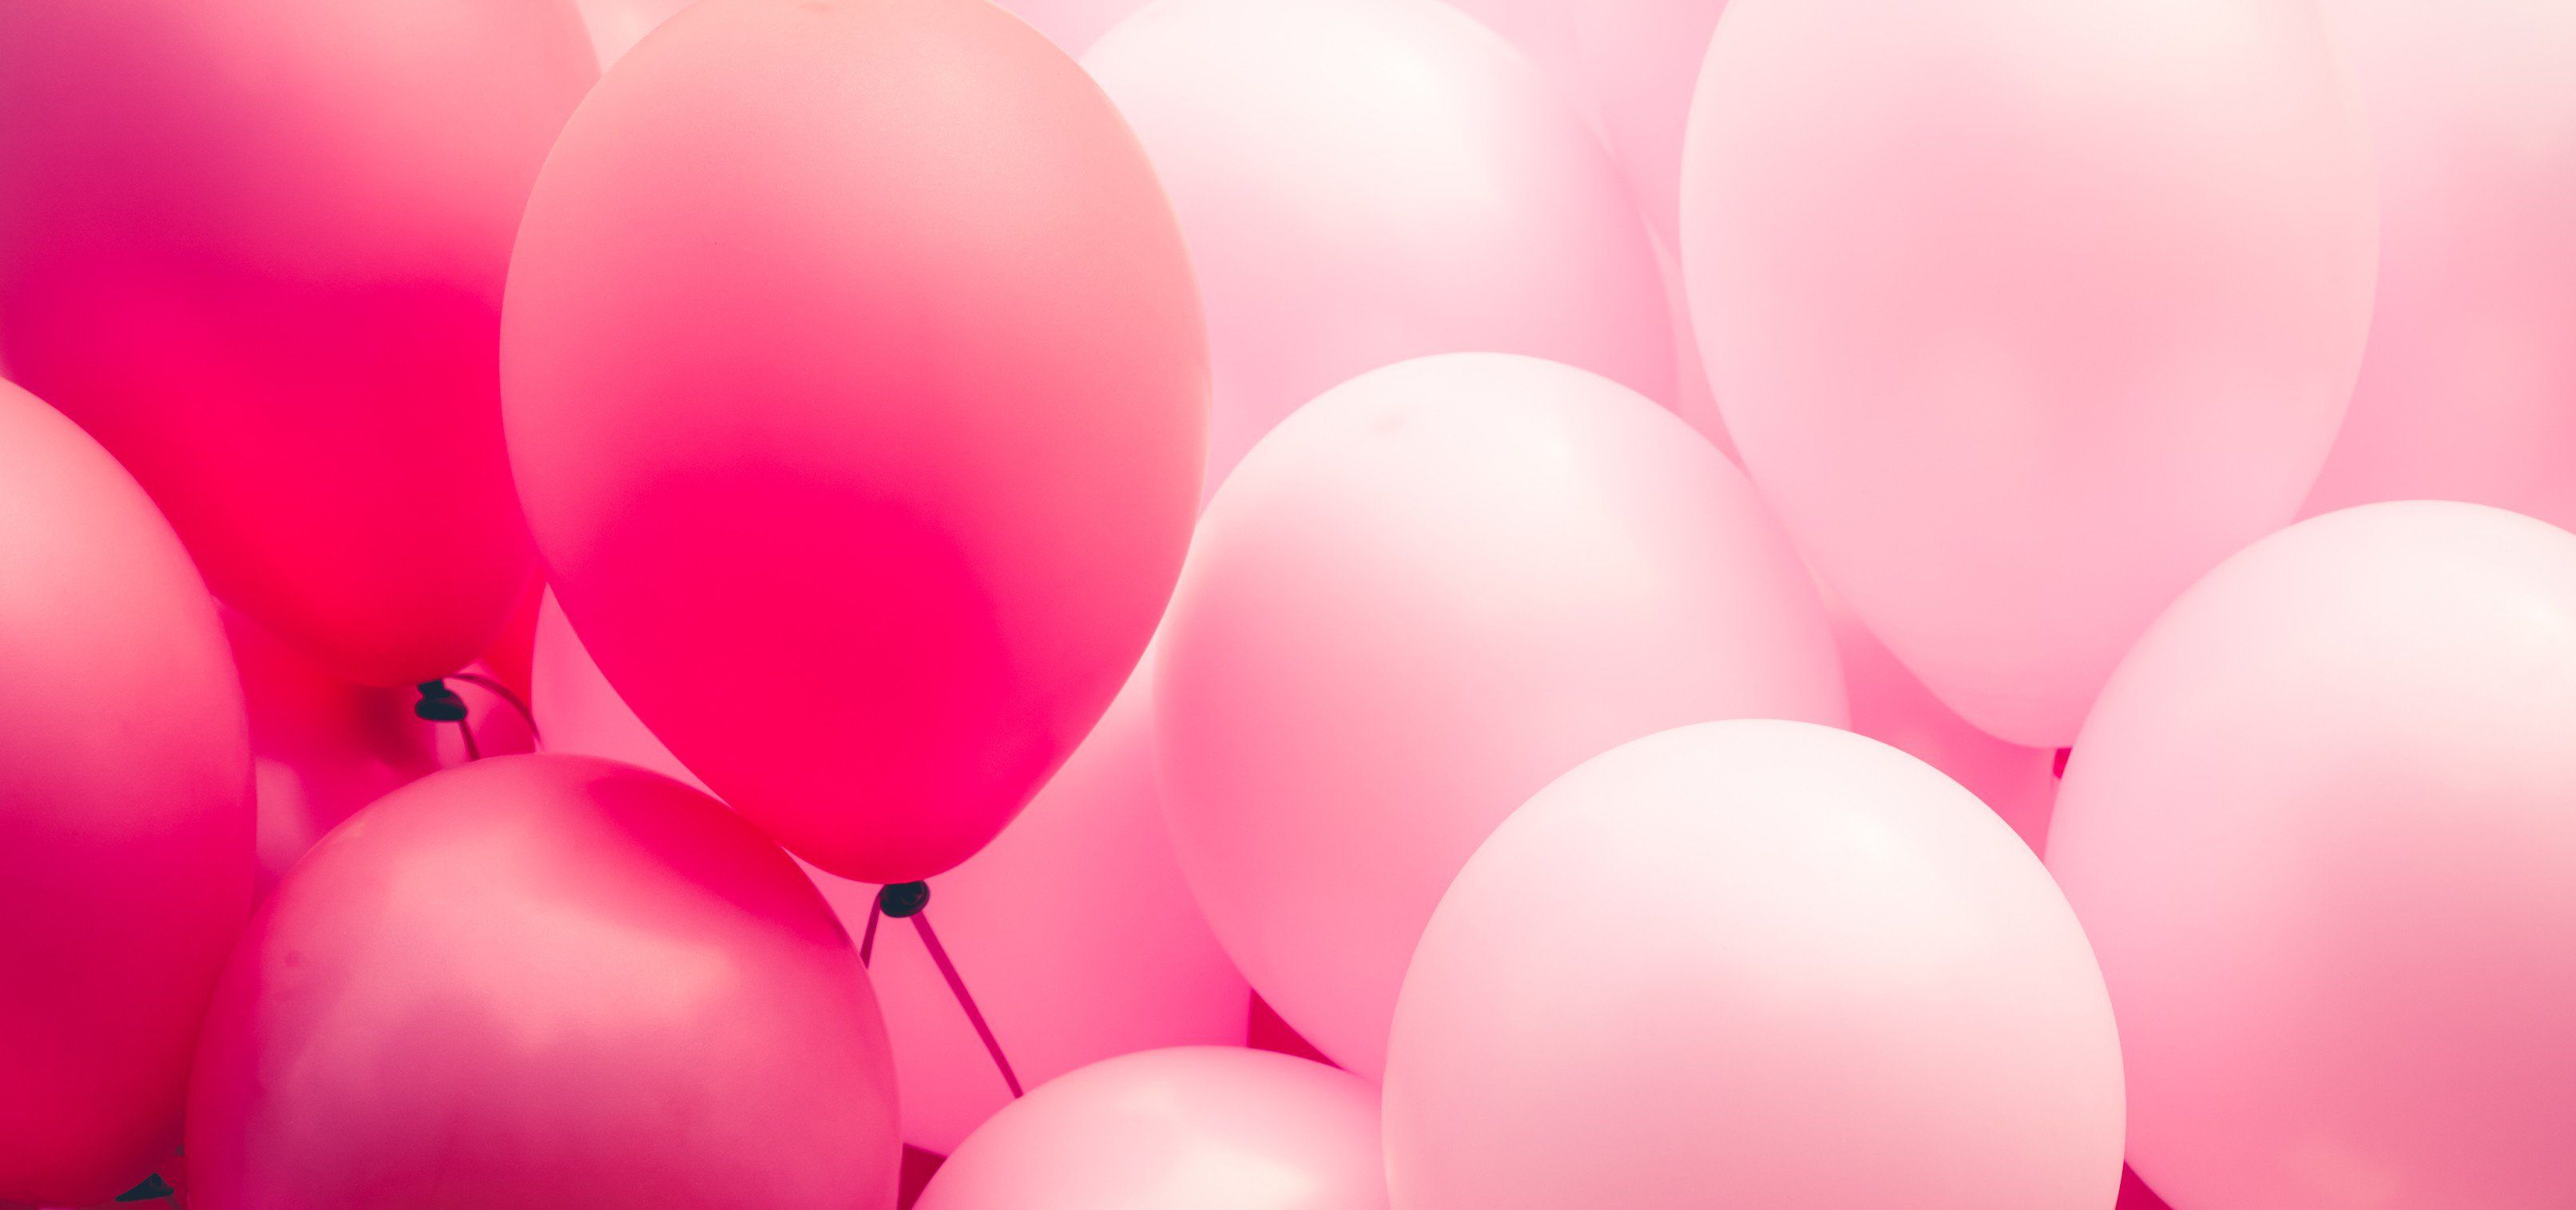 balloons on Pinterest